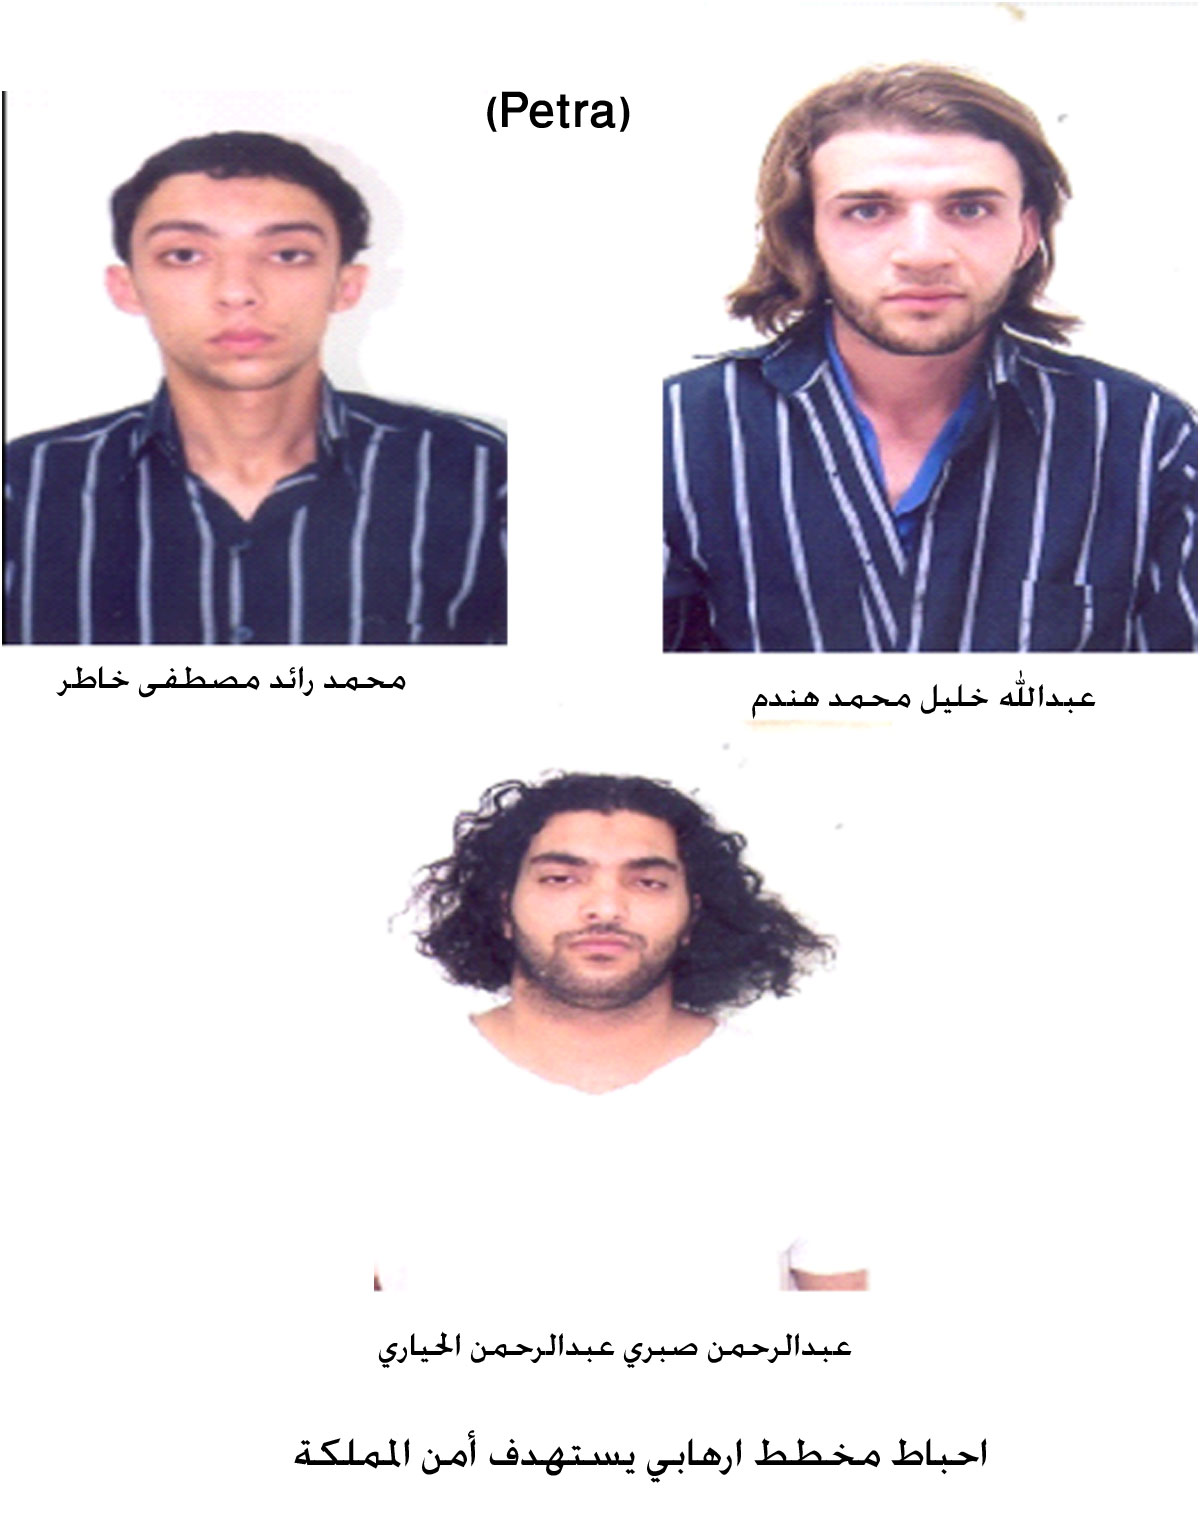 اعتقال 11 ارهابي يستهدفون أمن المملكة الاردنيه.. صور..؟؟  Image